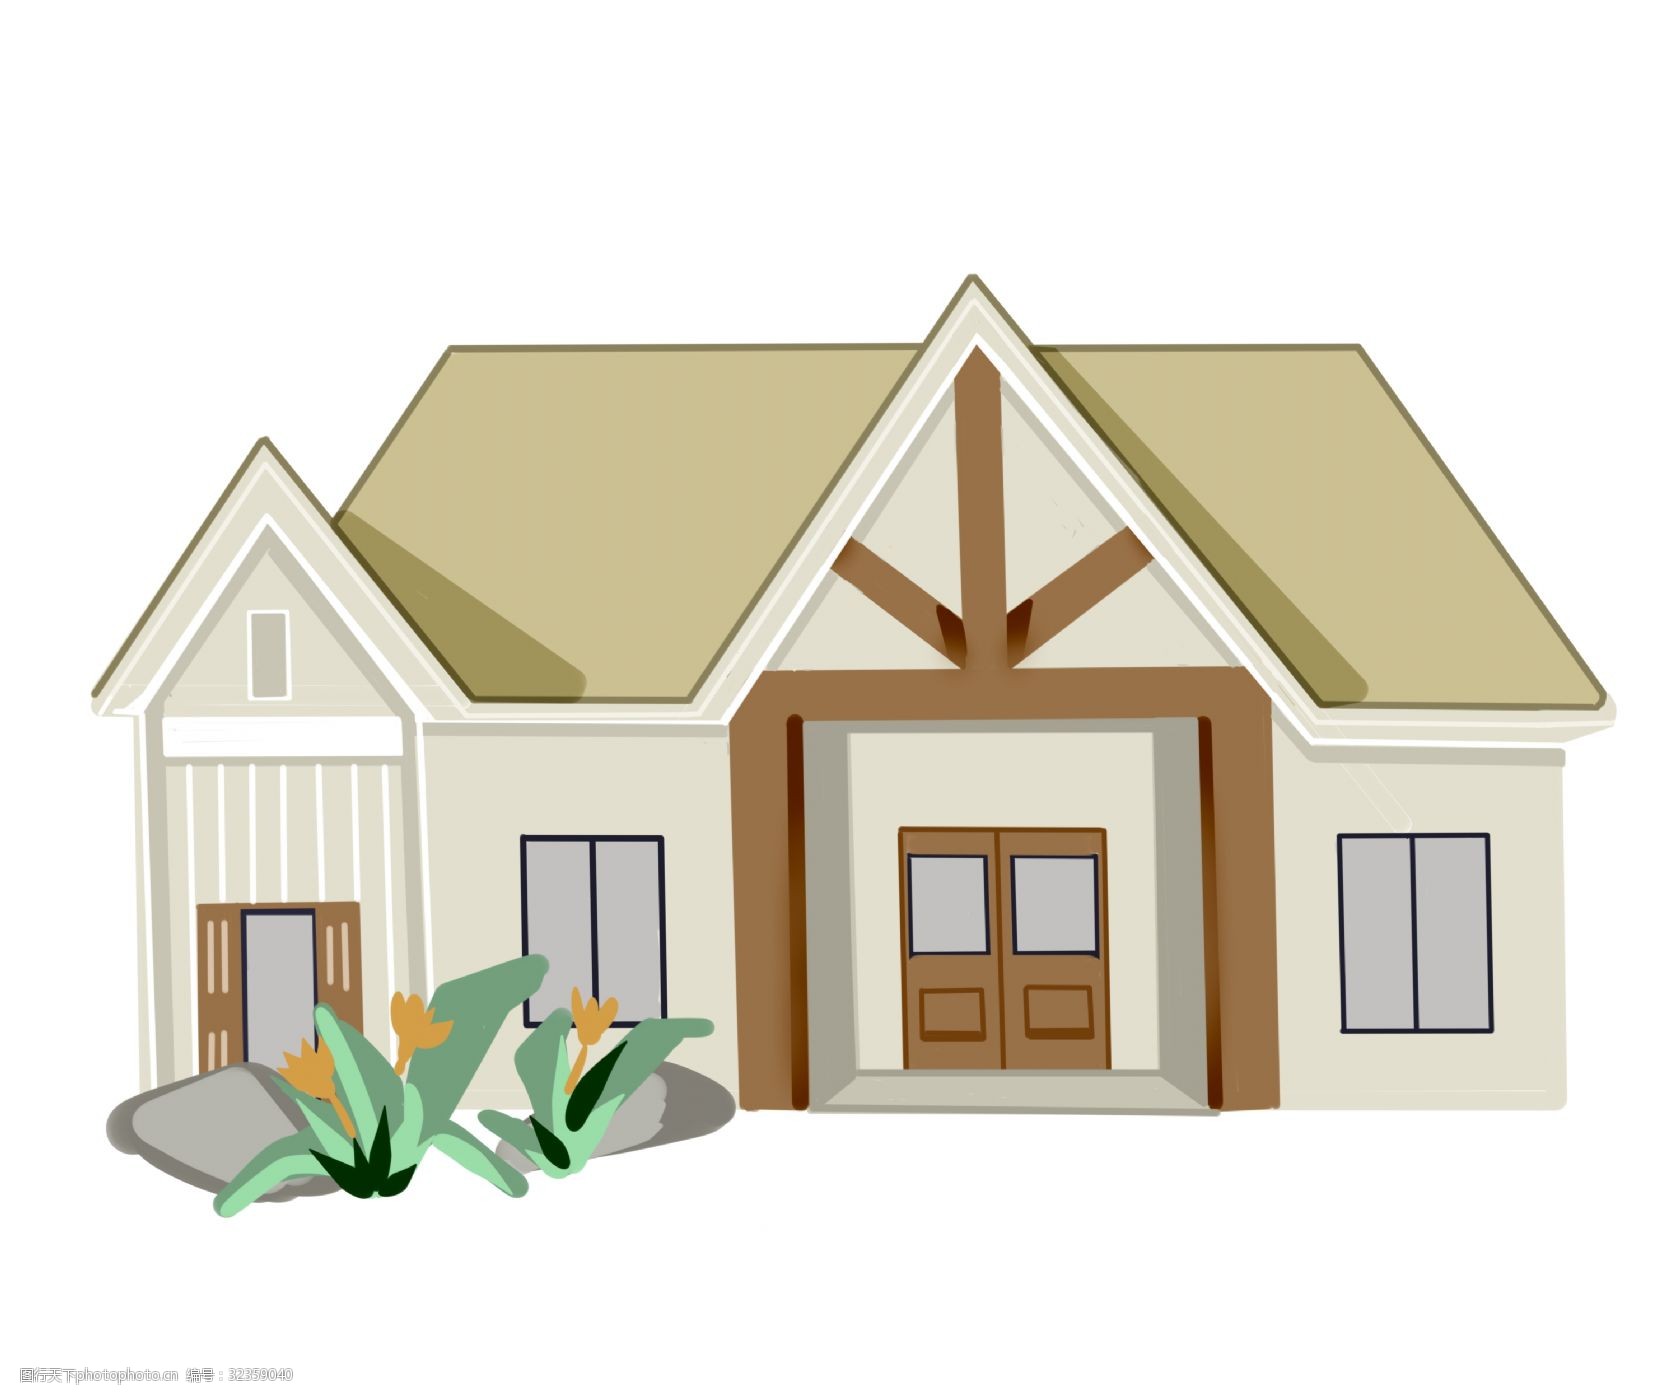 关键词:木质建筑房子插画 木质的房子 卡通插画 建筑插画 房子插画 高